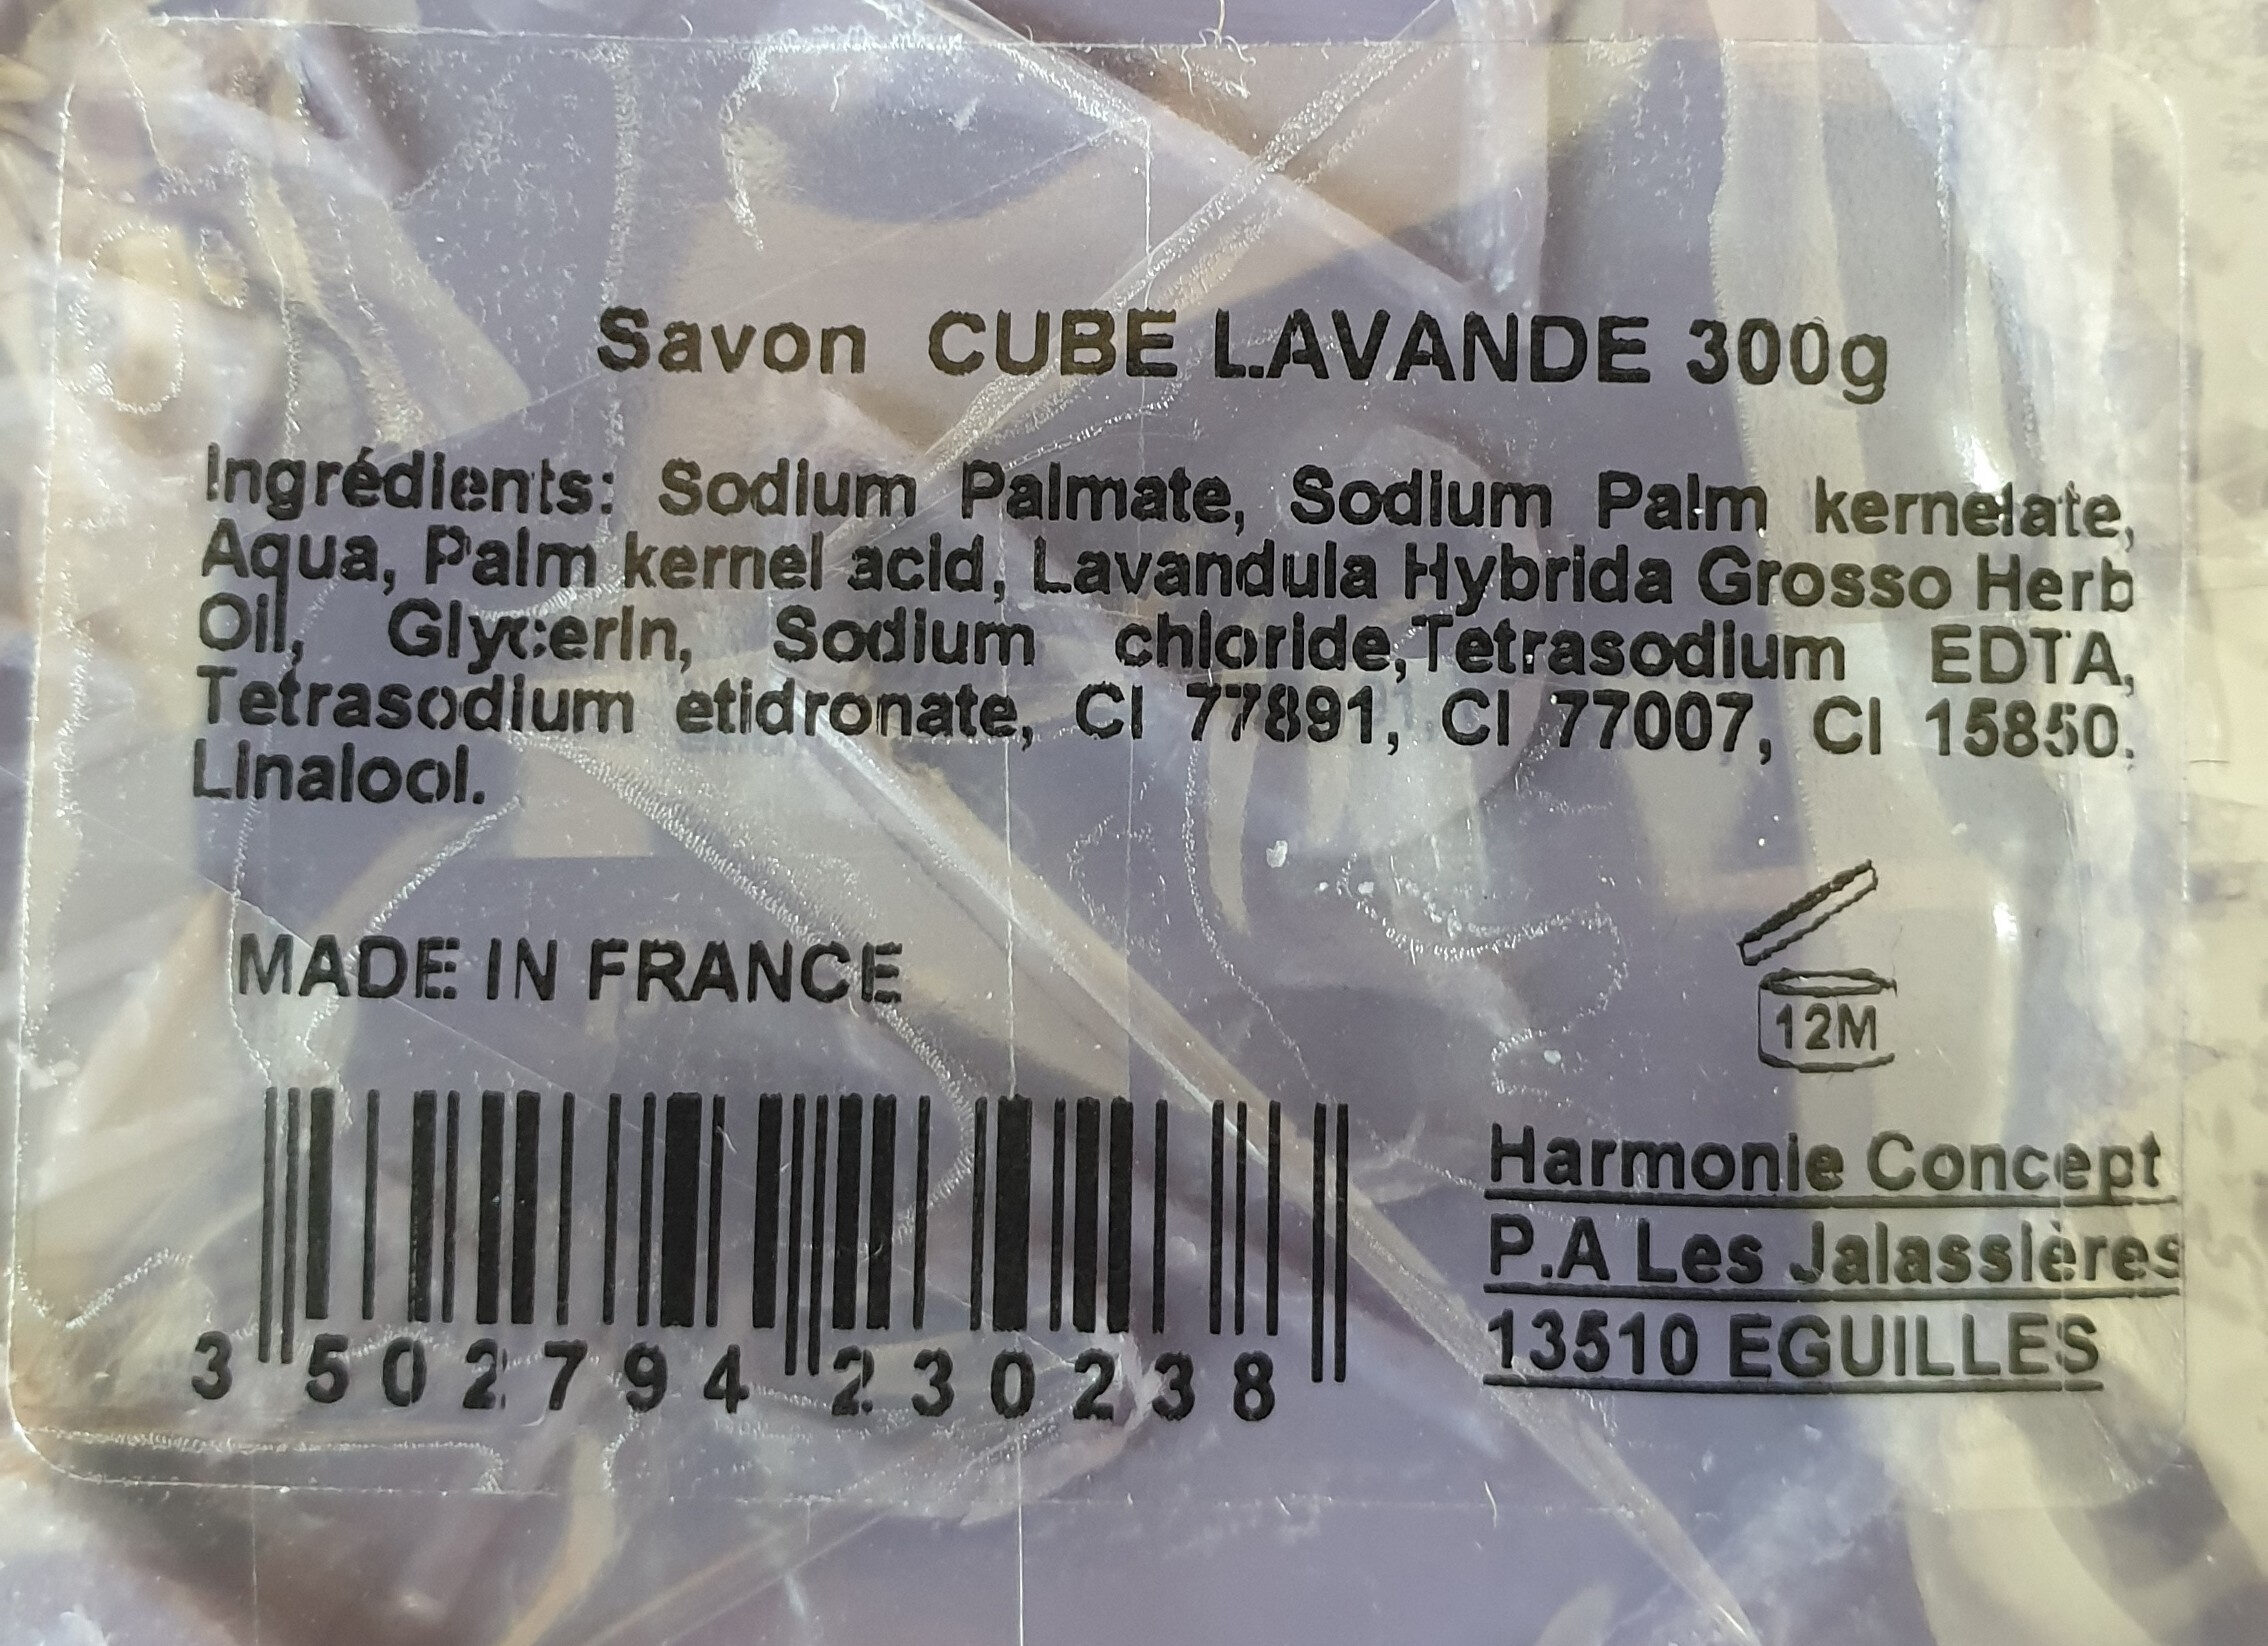 Savon cube lavande 300g - Ingredientes - fr